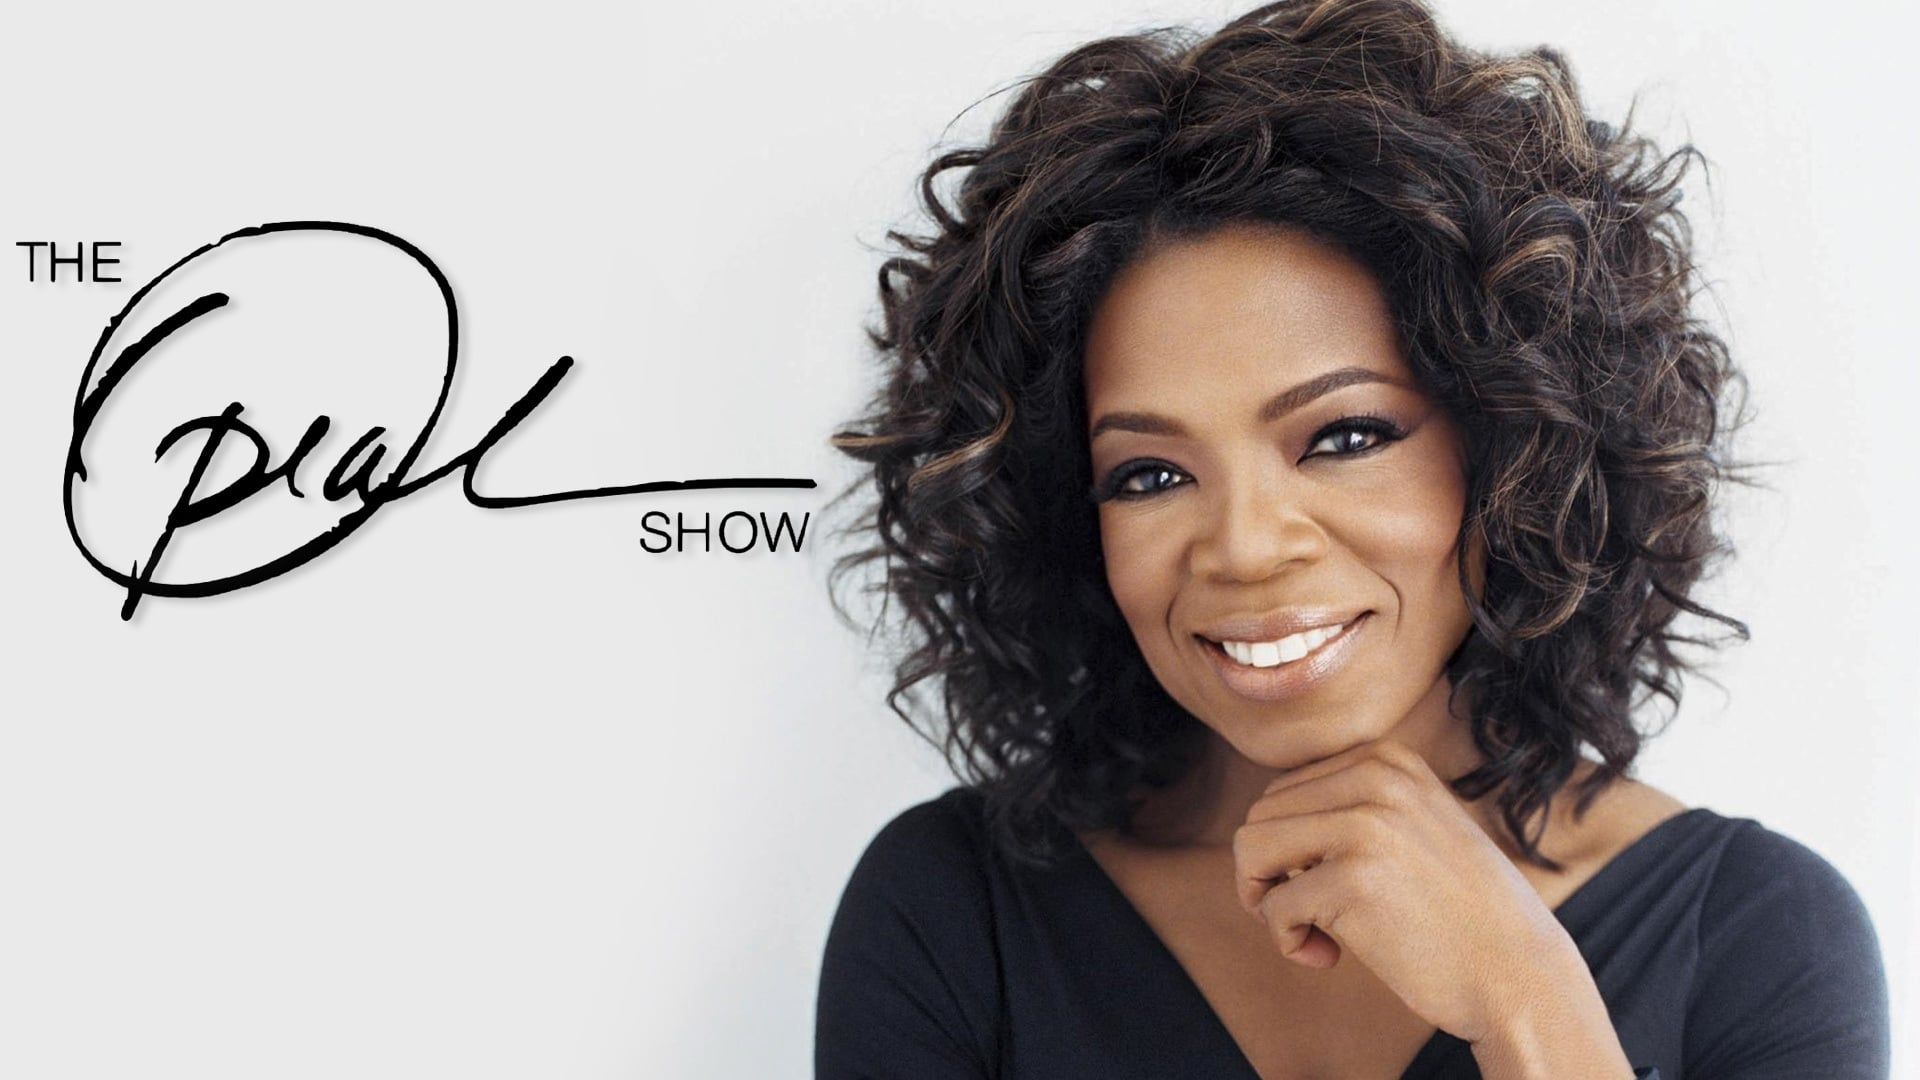 The Oprah Winfrey Show background